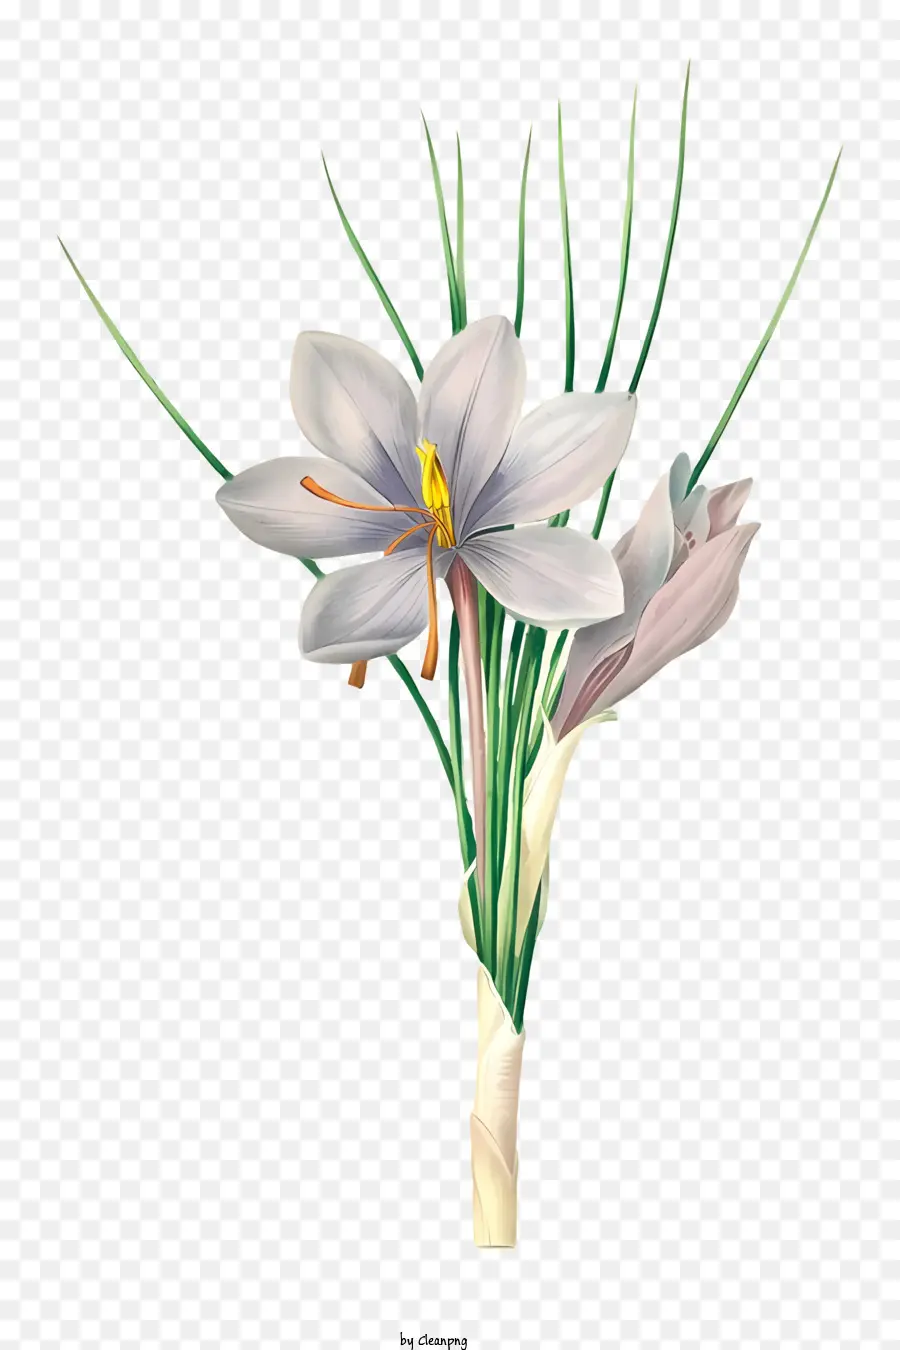 Blütenblätter rollten lange Stielweite zusammen - Rollte weiße Blume mit gelbem Zentrum und lila Stiel